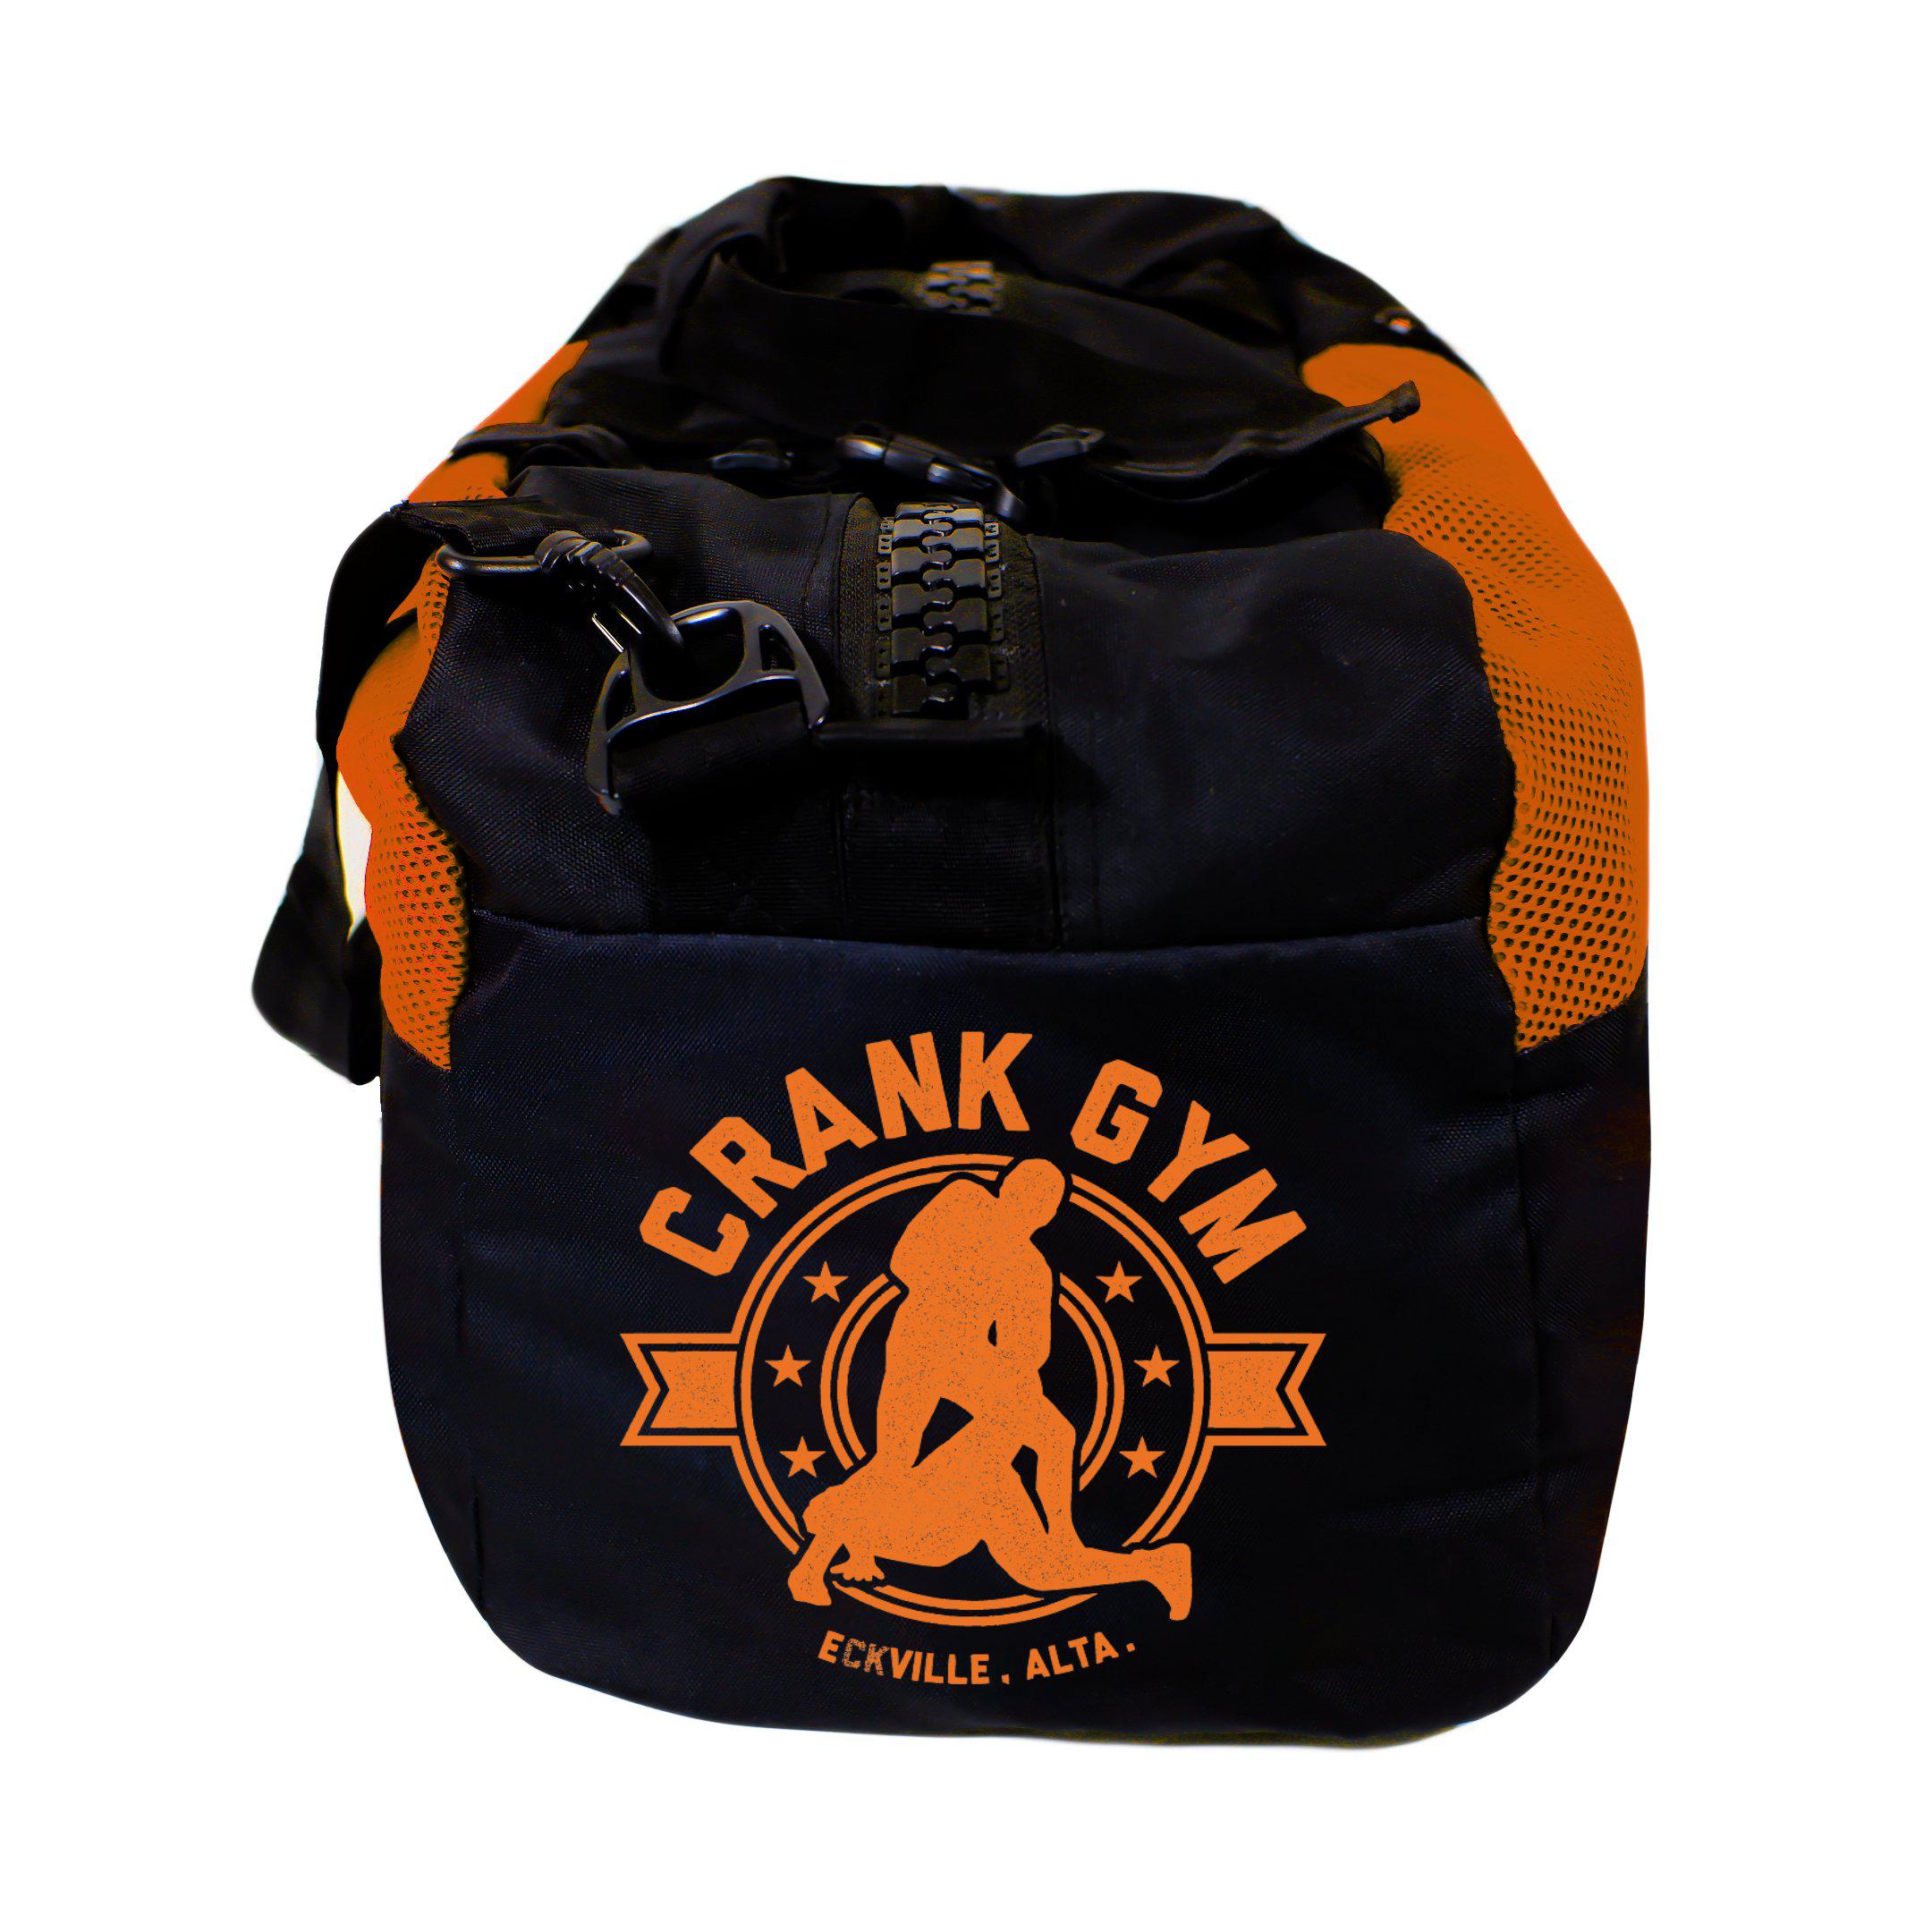 Crank Gym Gear Bag - Zenko Fightwear